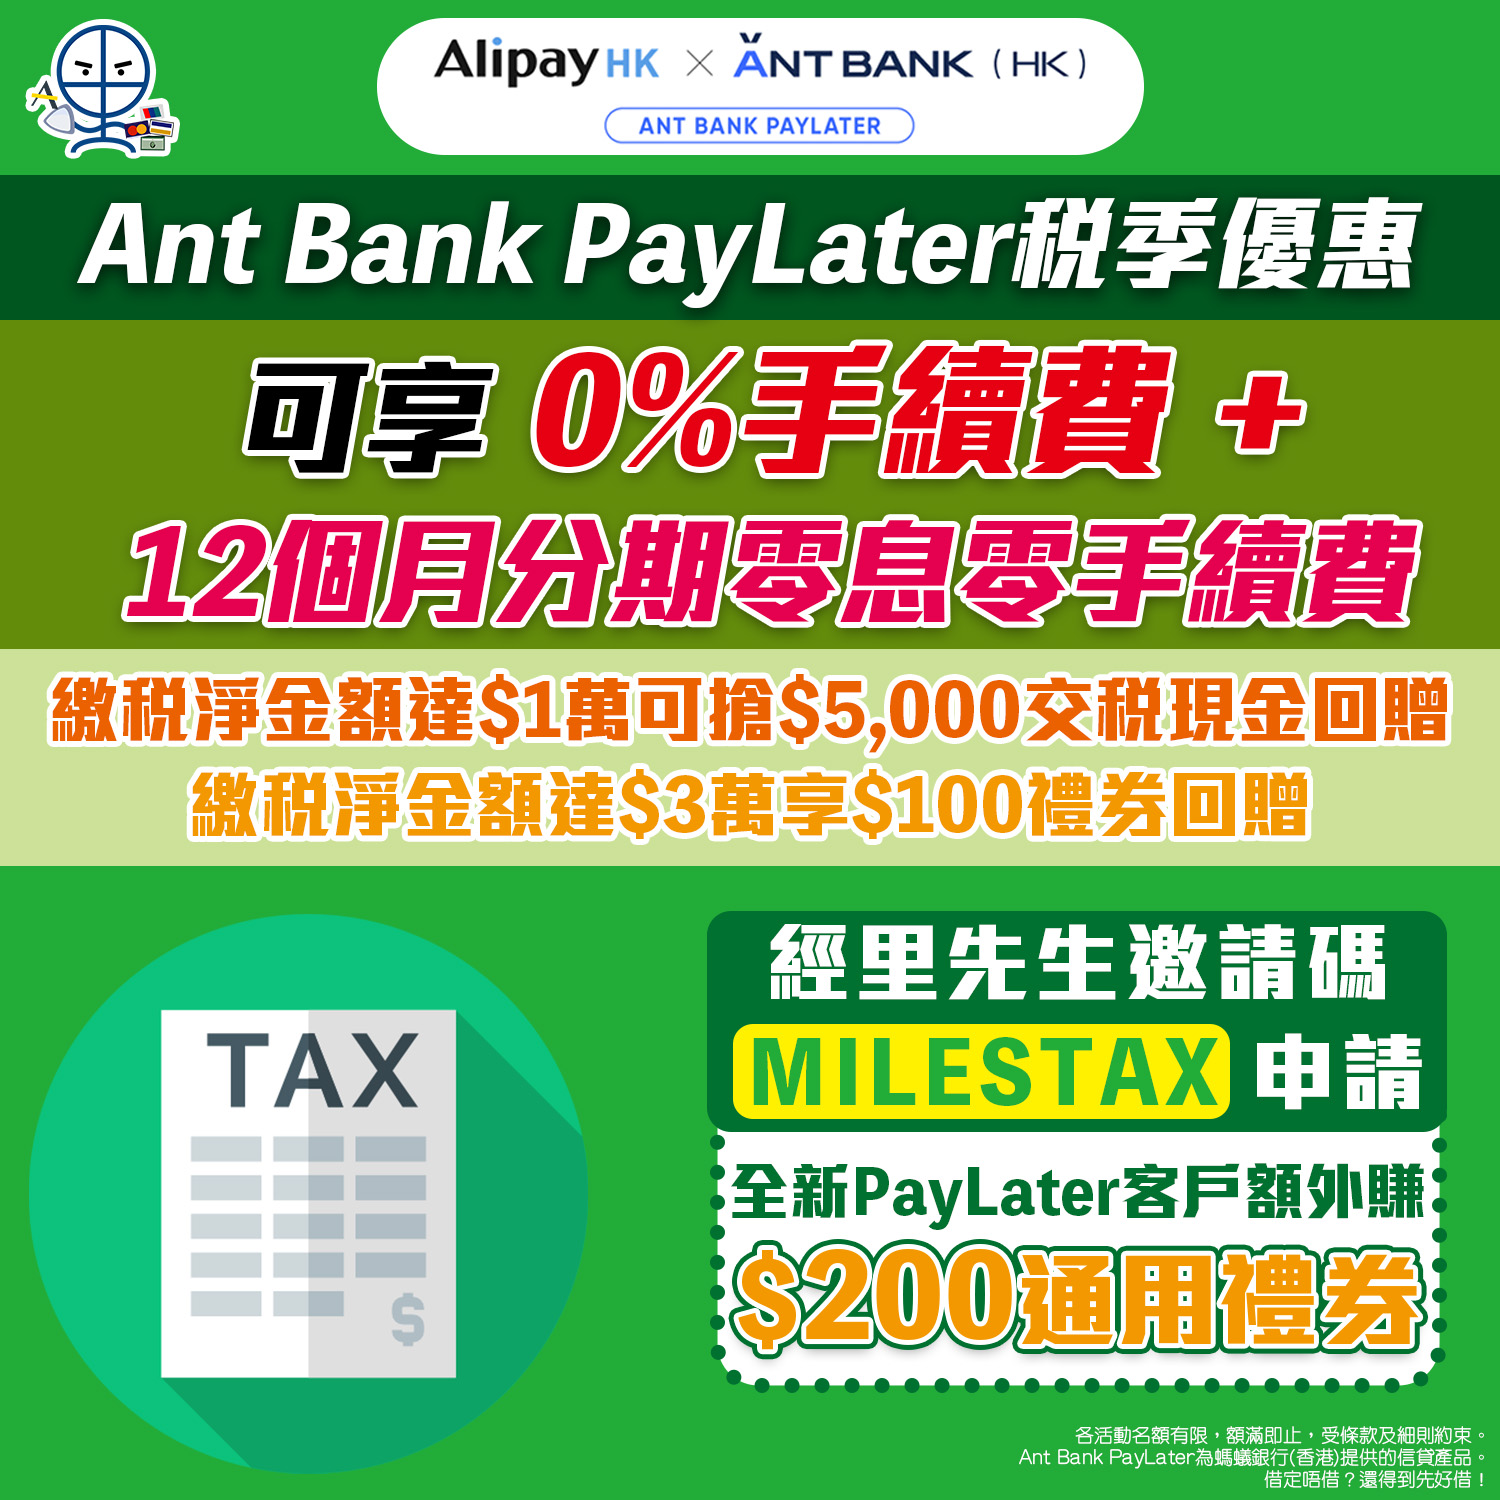 螞蟻銀行Ant Bank優惠碼/邀請碼「MILESTAX」申請PayLater即賺HK$200通用禮券可以交稅